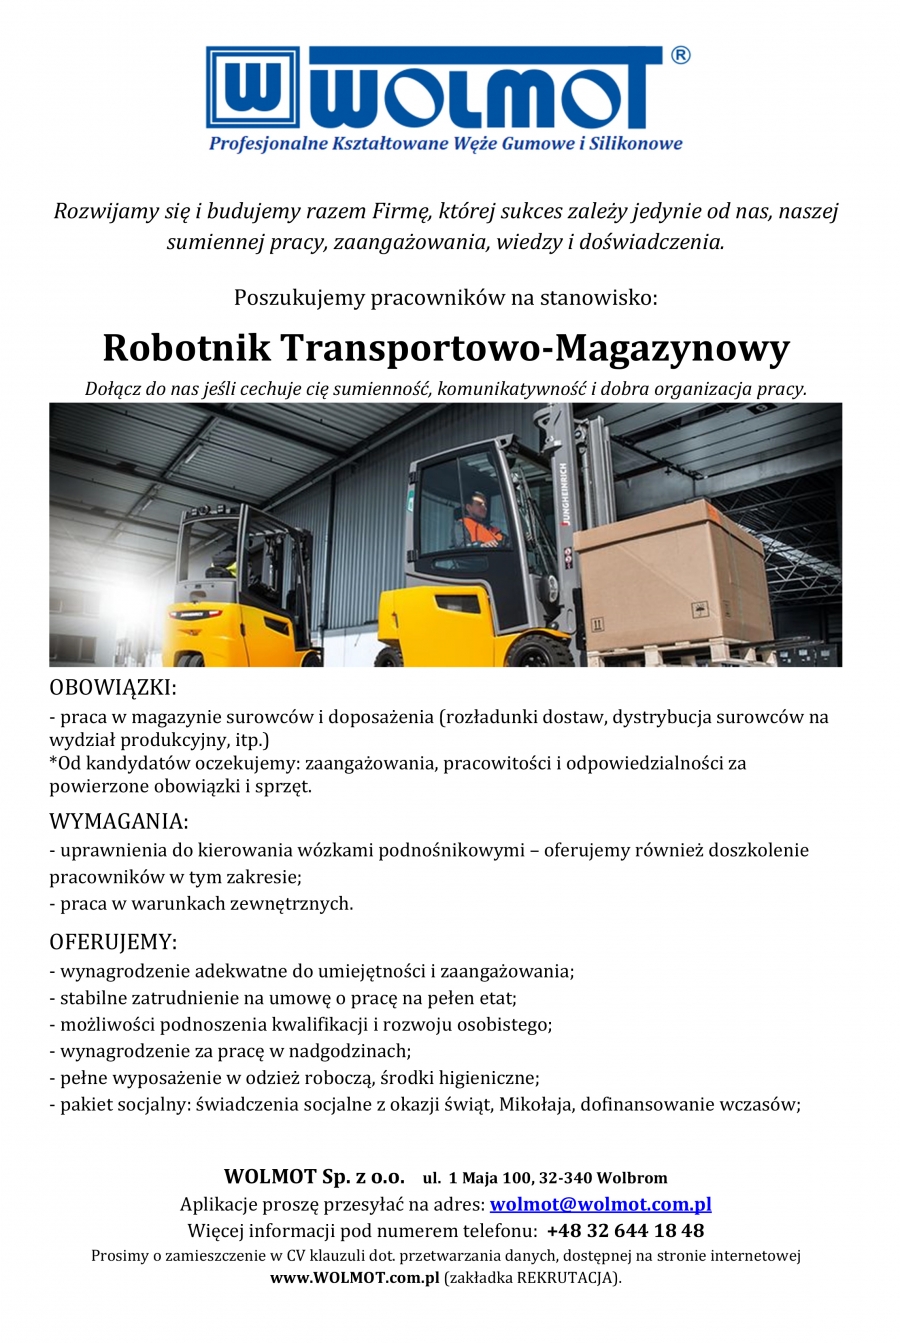 PPWG &quot;WOLMOT&quot; Sp. z o.o. poszukuje pracowników na stanowisko: Robotnik Transportowo-Magazynowy